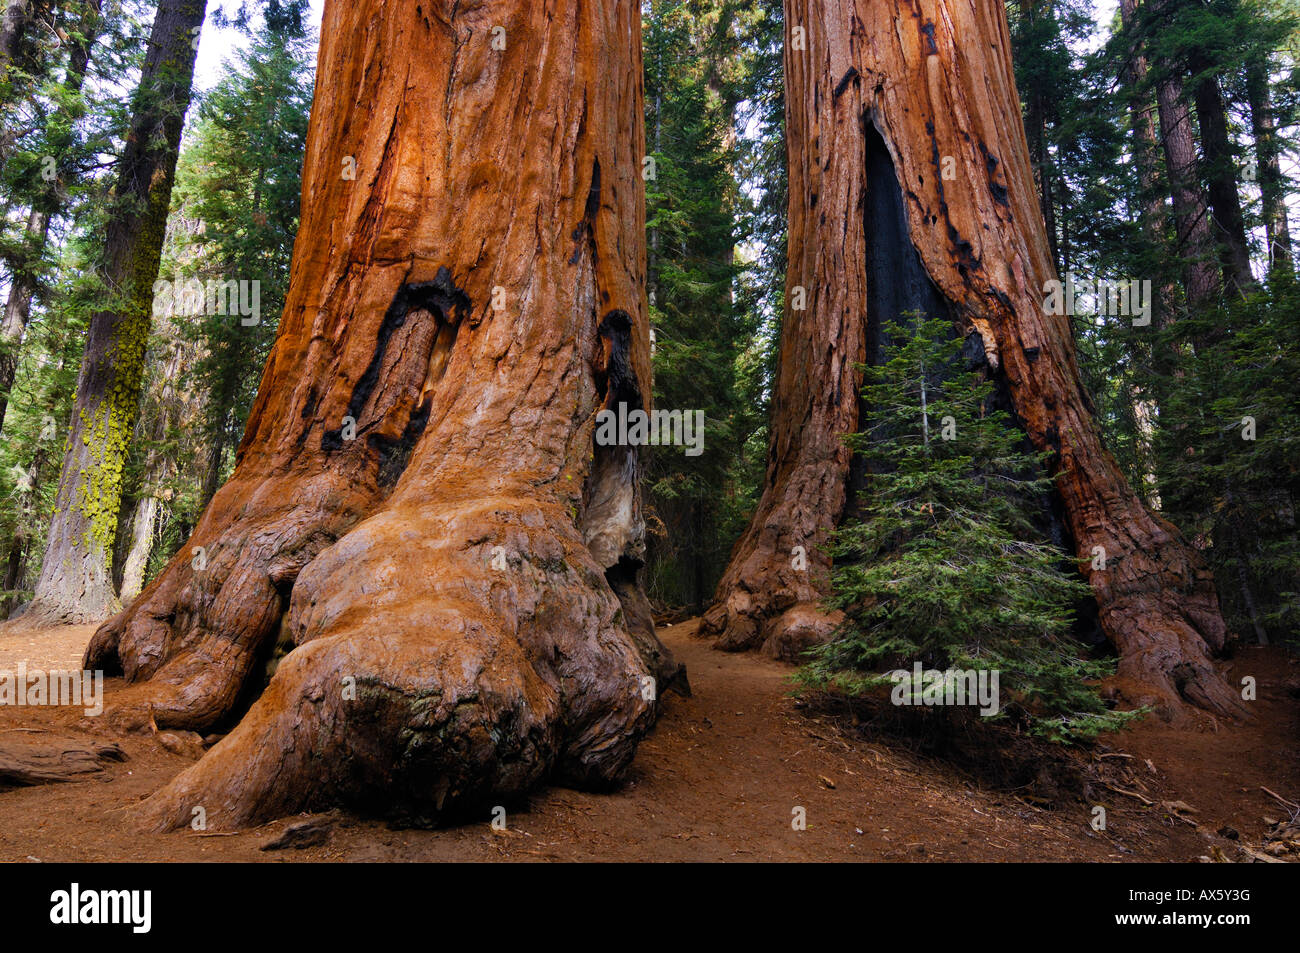 Giant Sequoias (Sequoiadendron giganteum), Sequoia National Park, California, USA Stock Photo